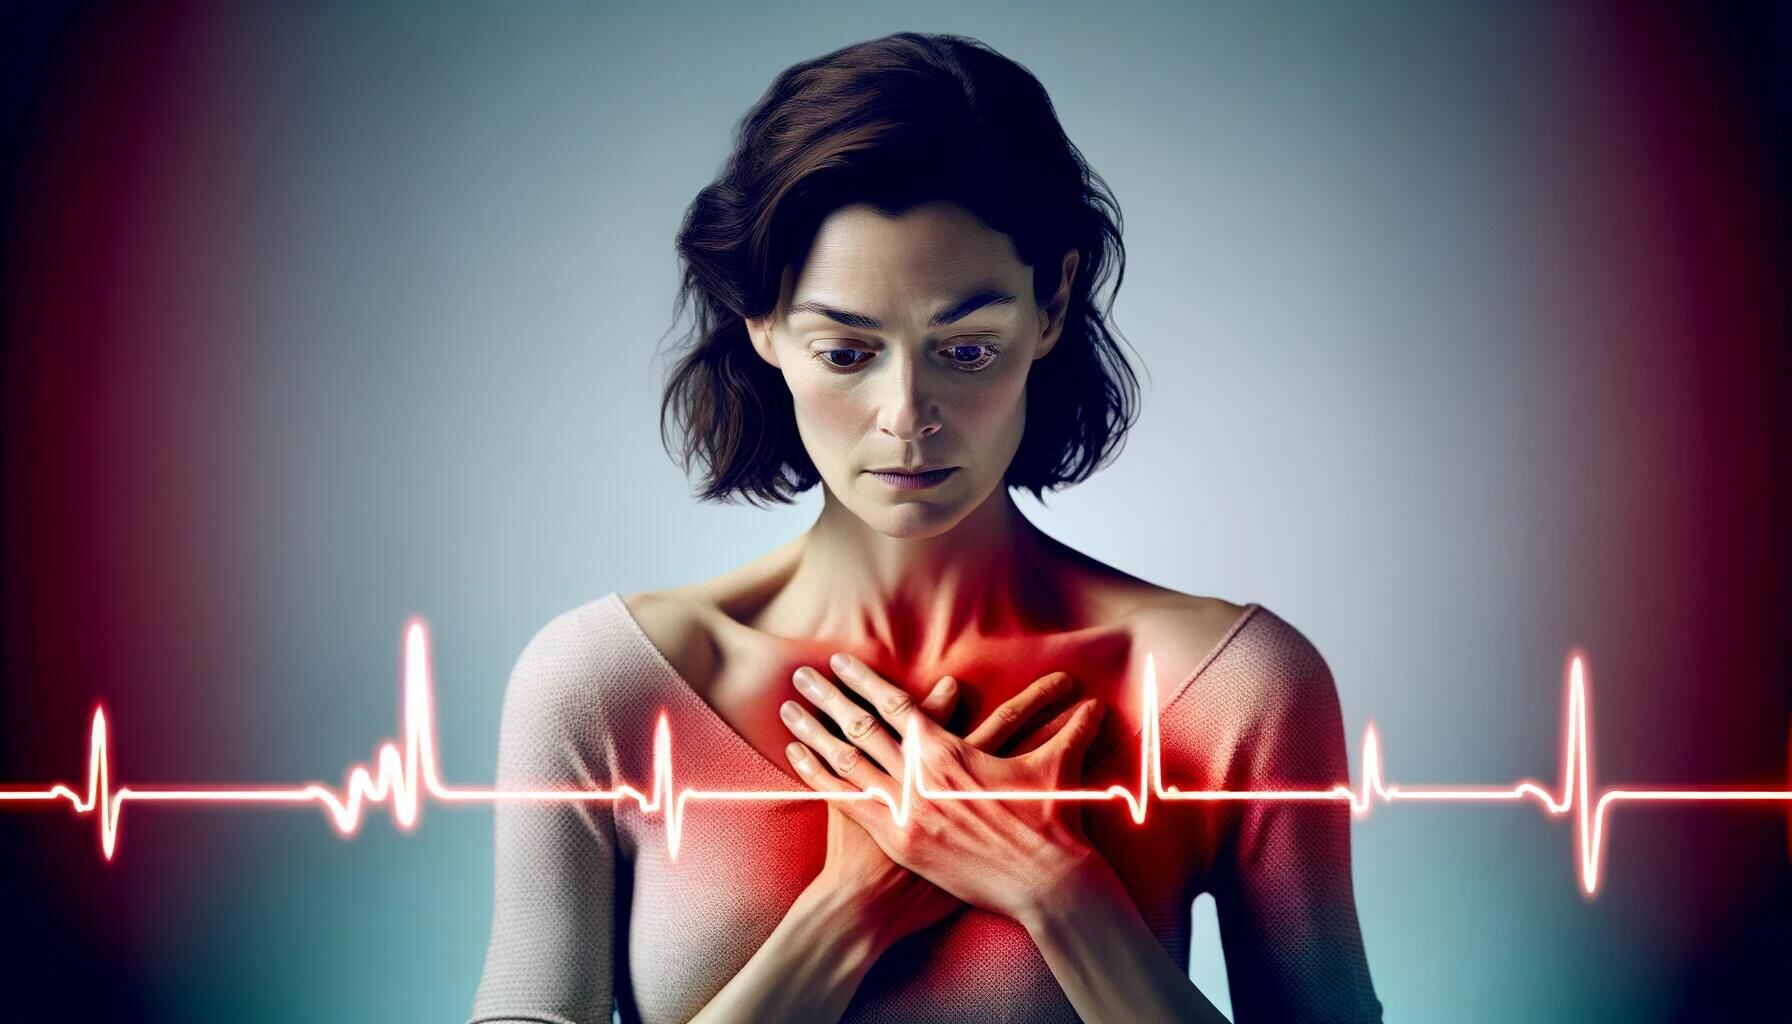 Imagen gráfica de una persona expresando dolor en el pecho, resaltado en rojo. Se visualiza una representación de electrocardiograma. Conciencia sobre riesgos cardíacos, cuidado del corazón y la importancia de la salud. (Imagen ilustrativa Infobae)